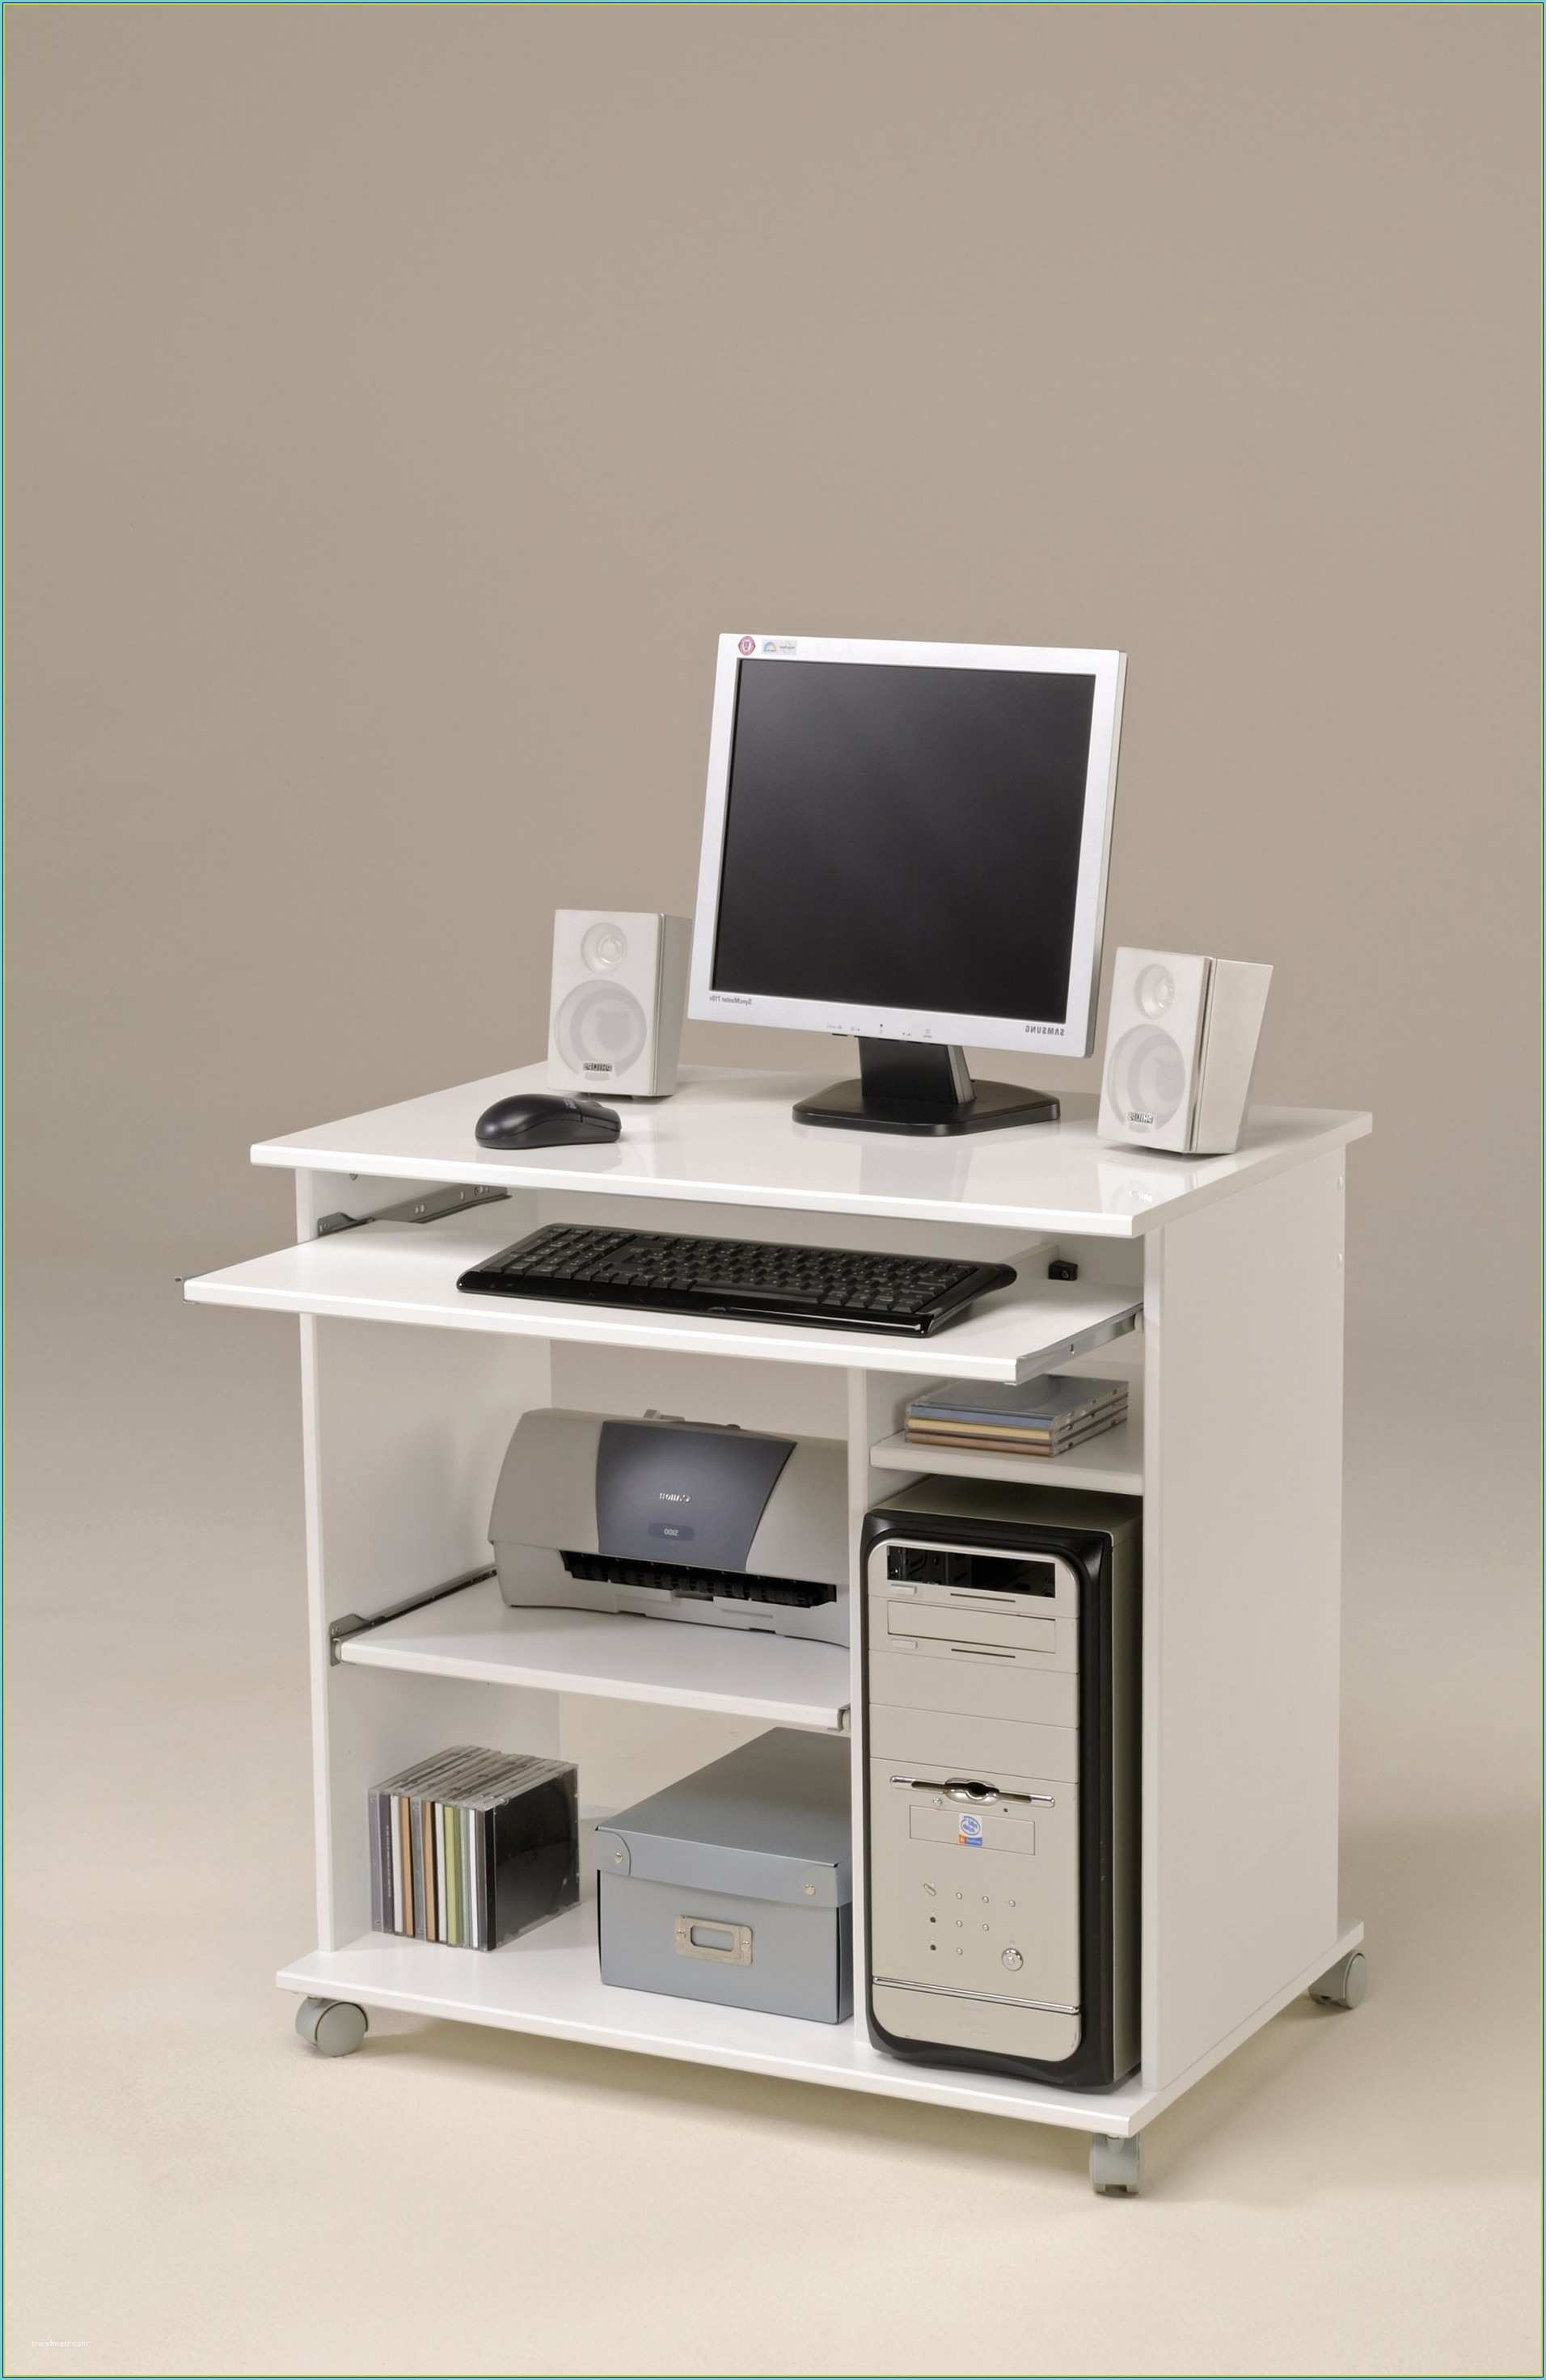 Table ordinateur Ikea Petit Meuble Pour ordinateur Portable Bureau Multimedia